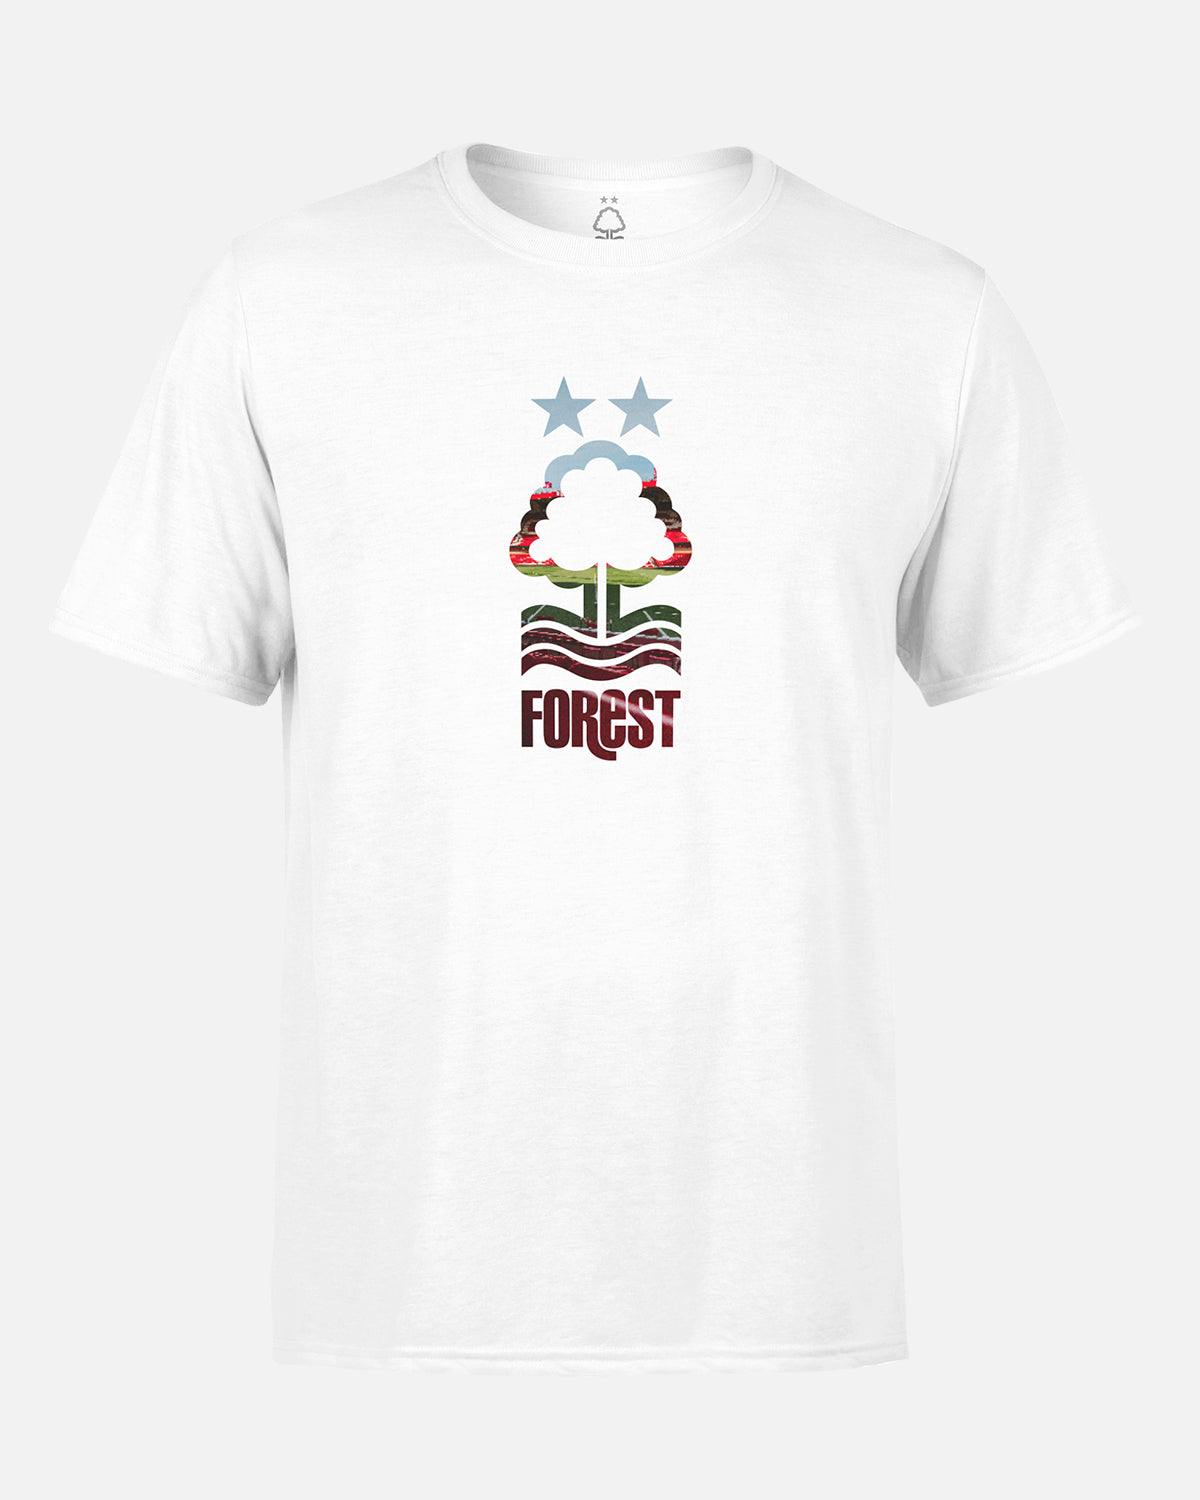 NFFC White City Ground Crest T-Shirt